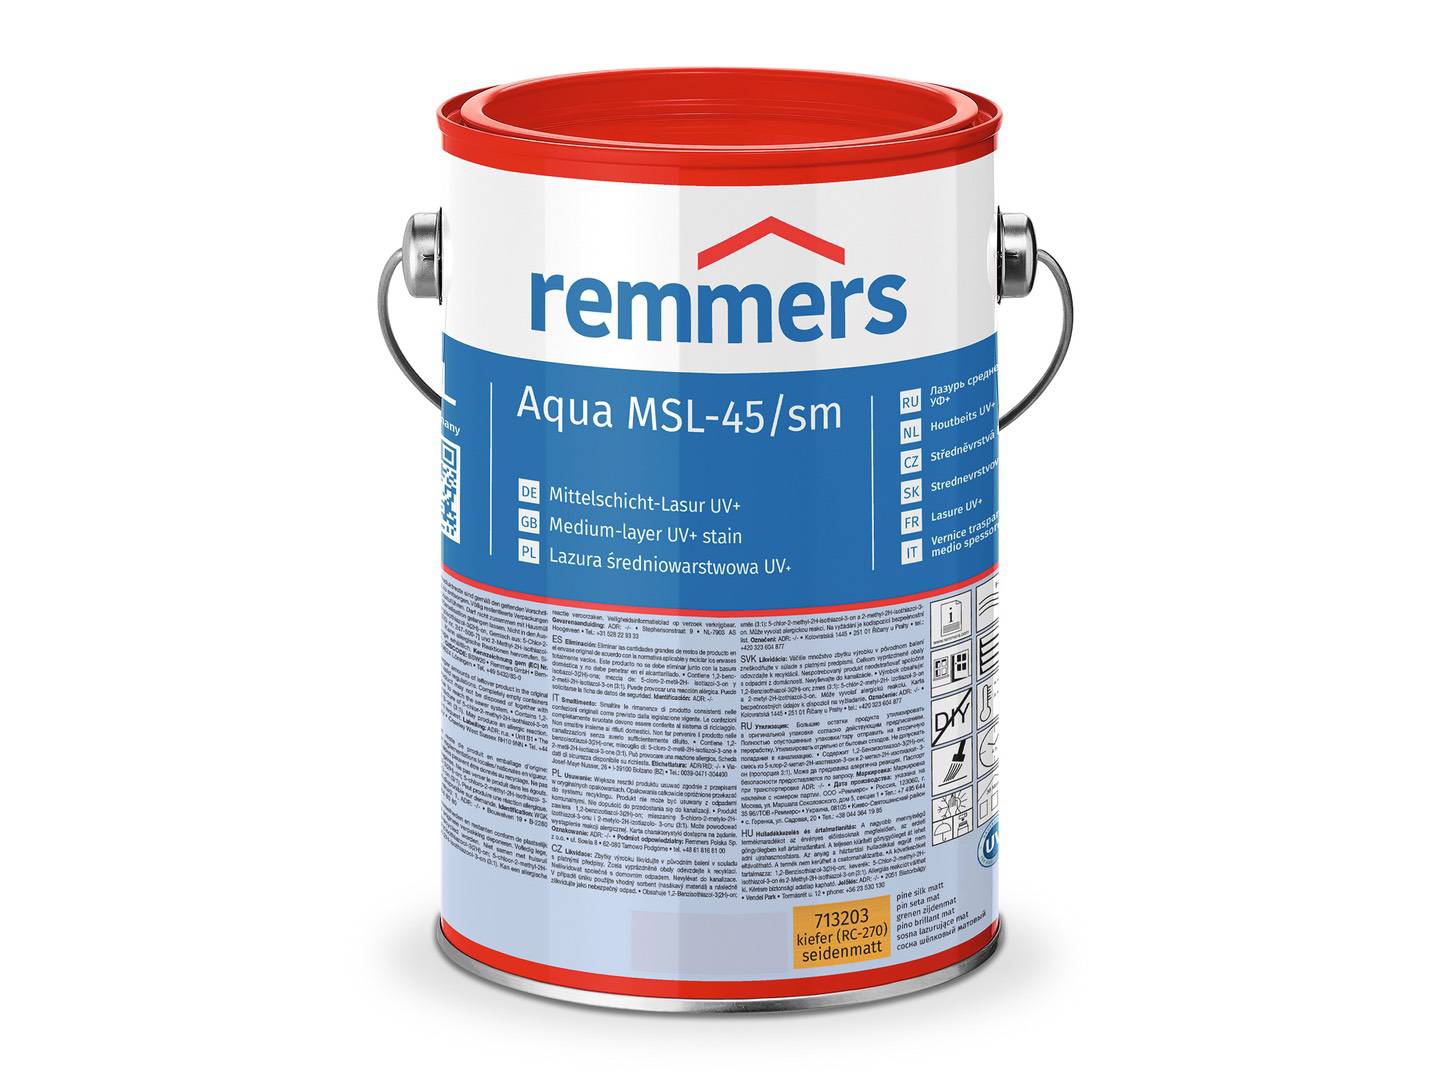 REMMERS Aqua MSL-45/sm-Mittelschicht-Lasur UV+ nussbaum (RC-660) 20 l